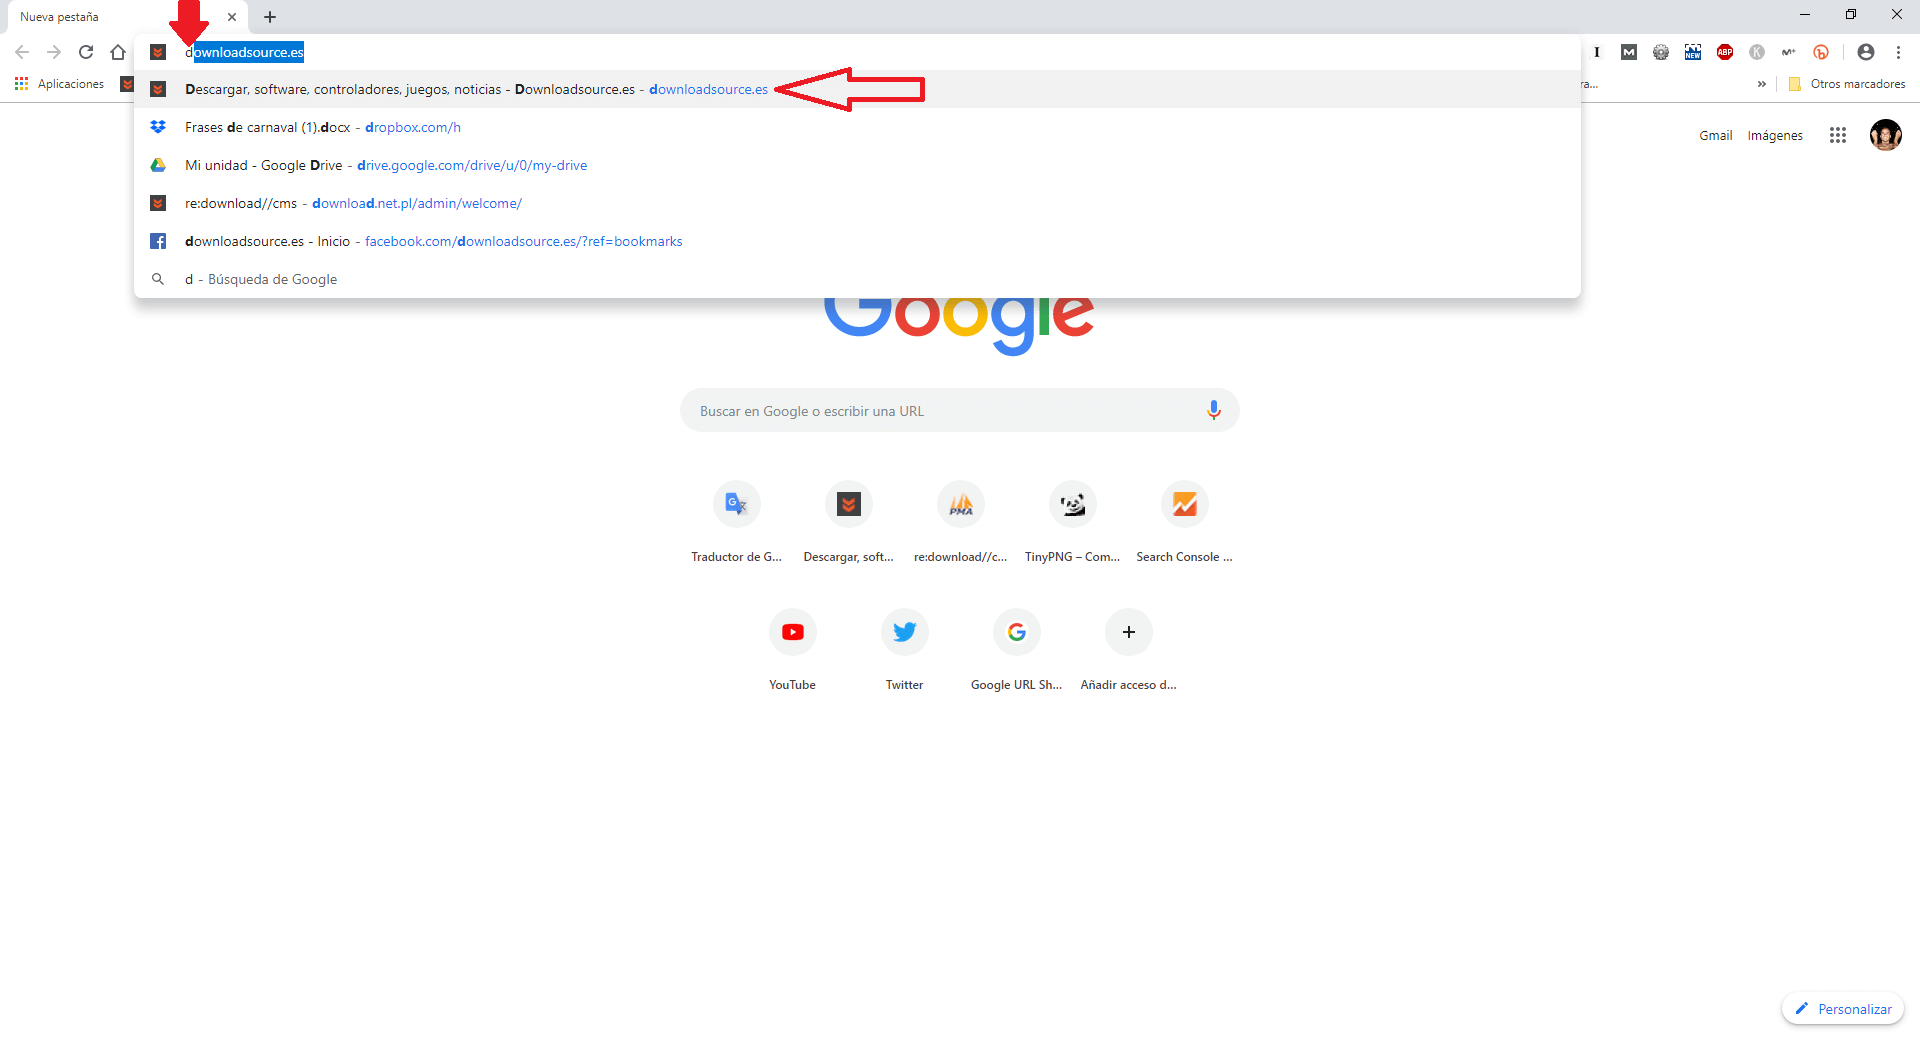 Google Chrome permite mostrar las URLs en las sugerencias antes que los términos de búsqueda.